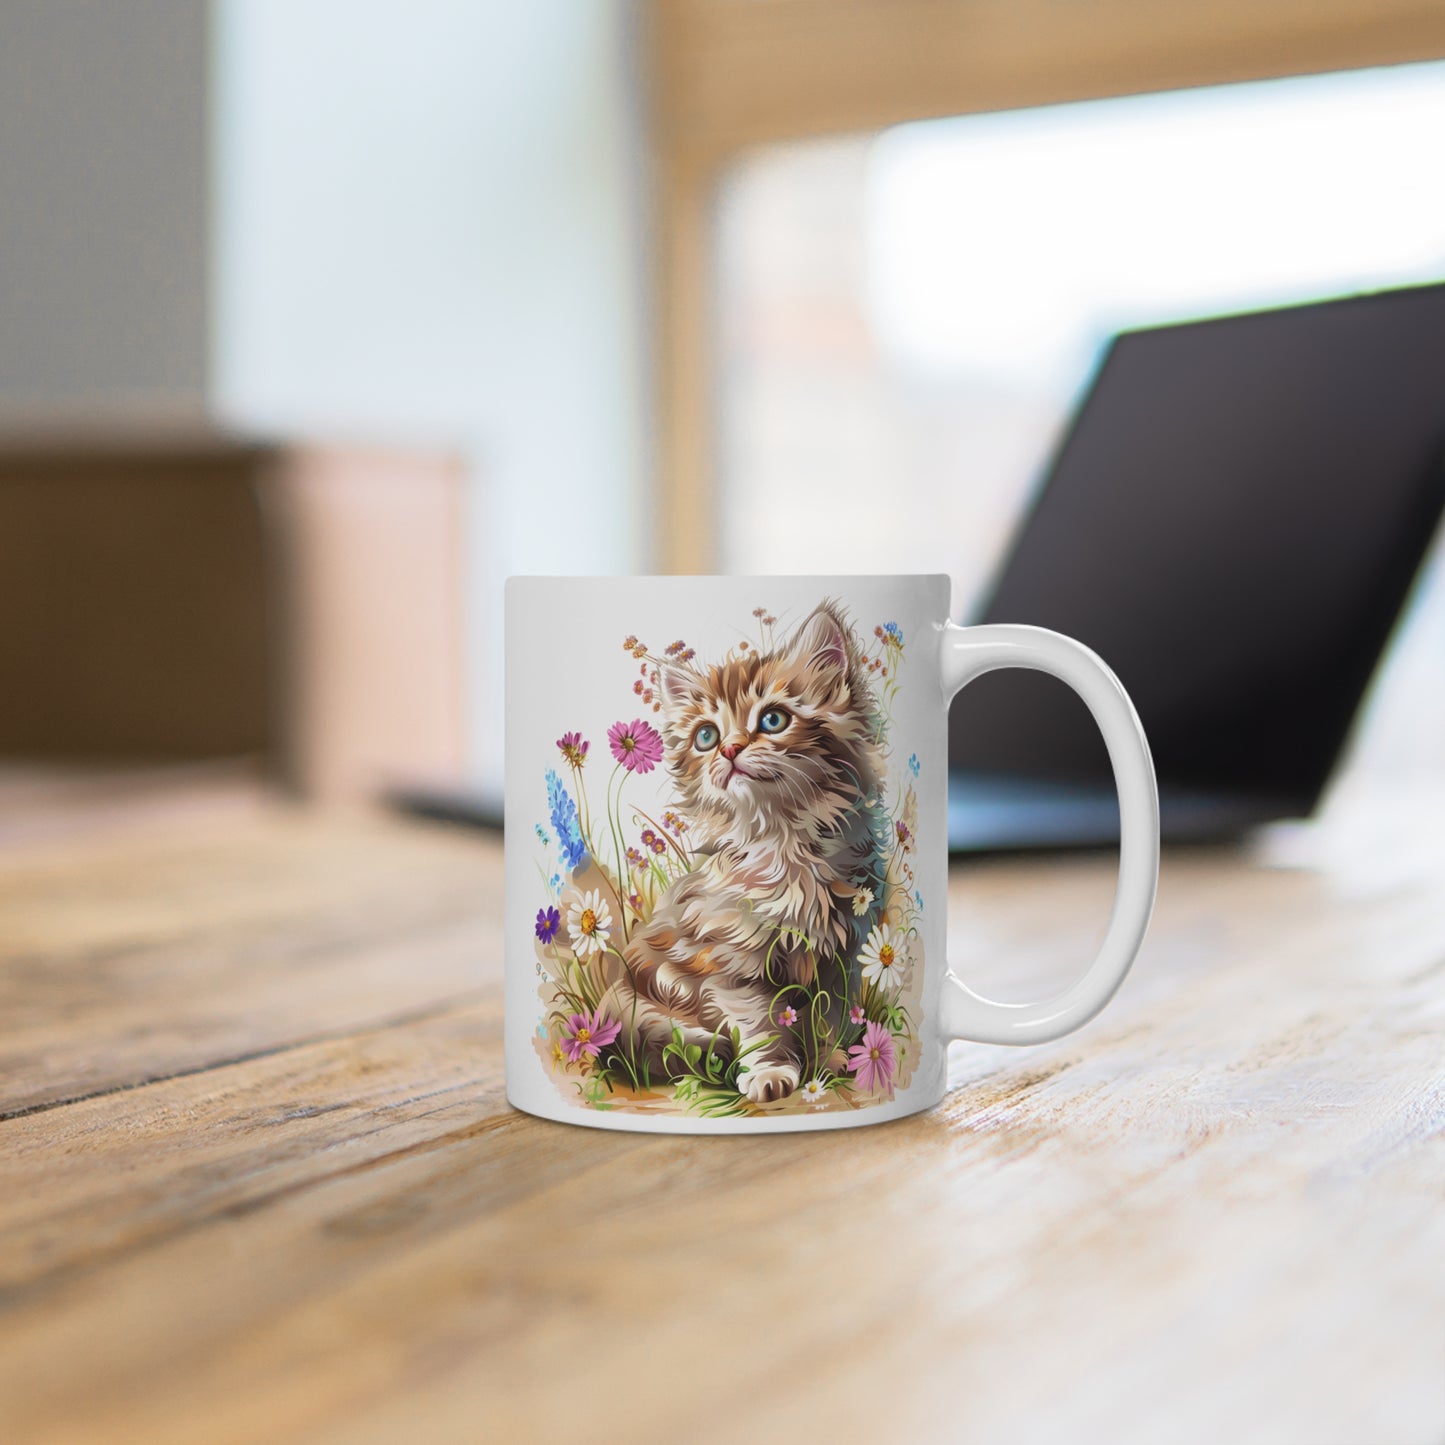 Mug cup: Little kitten